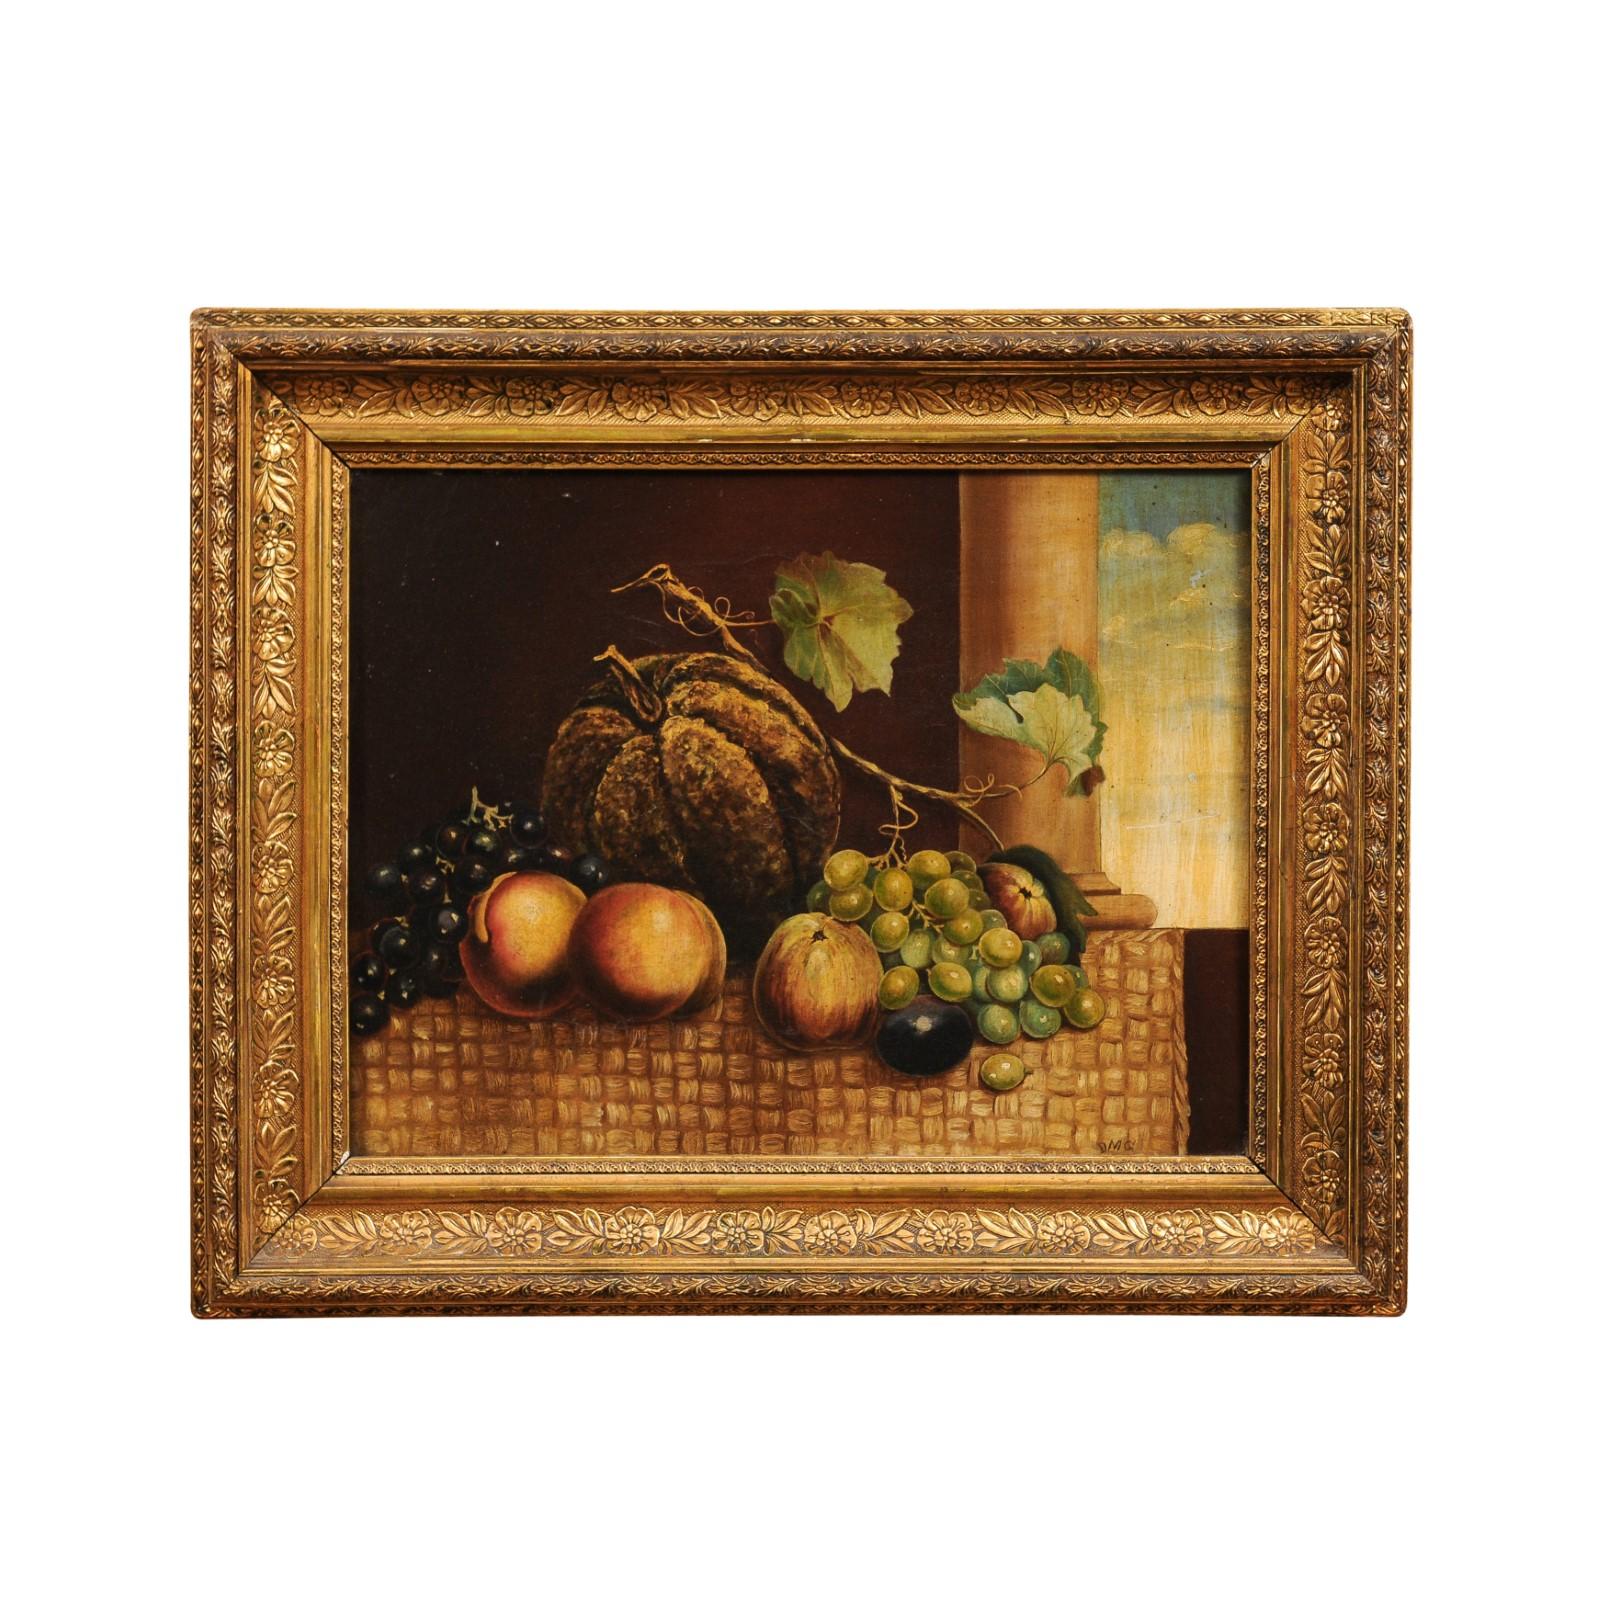 Nature morte italienne à l'huile sur toile du XIXe siècle représentant des fruits devant une colonne et un ciel ouvert, dans un cadre en bois doré. Créée en Italie au cours du XIXe siècle, cette nature morte à l'huile sur toile représente une